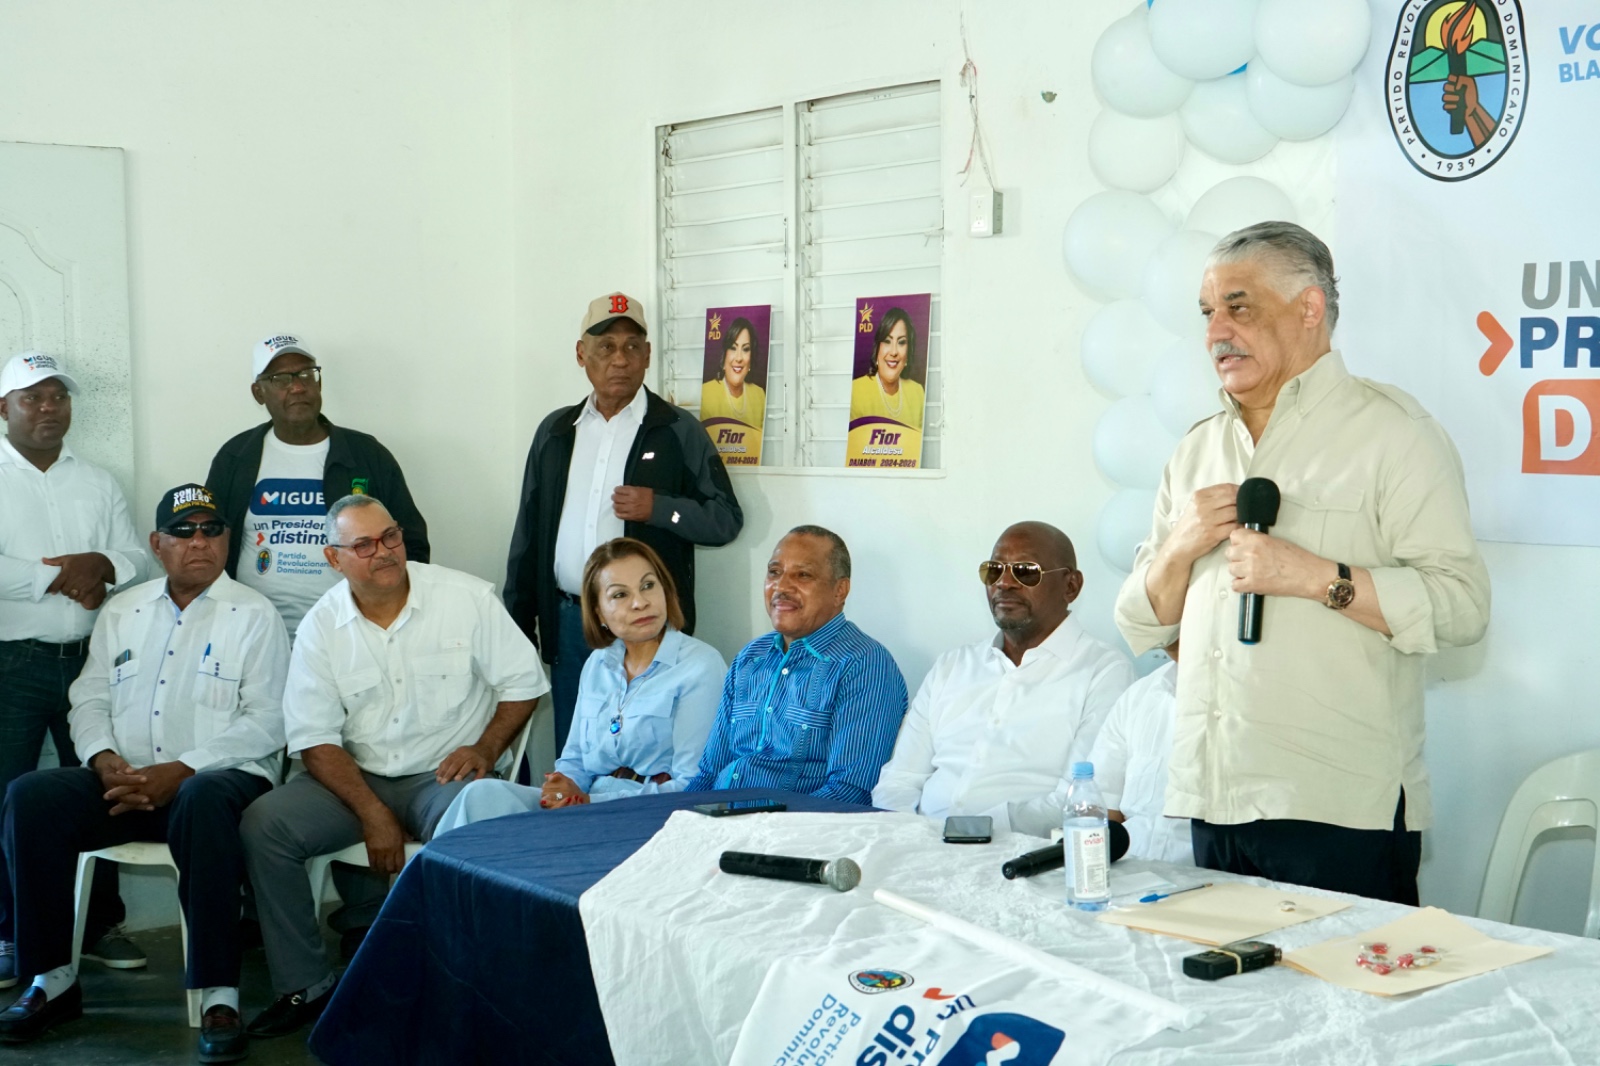 Miguel Vargas responsabiliza al gobierno por desplome de economía en Dajabón